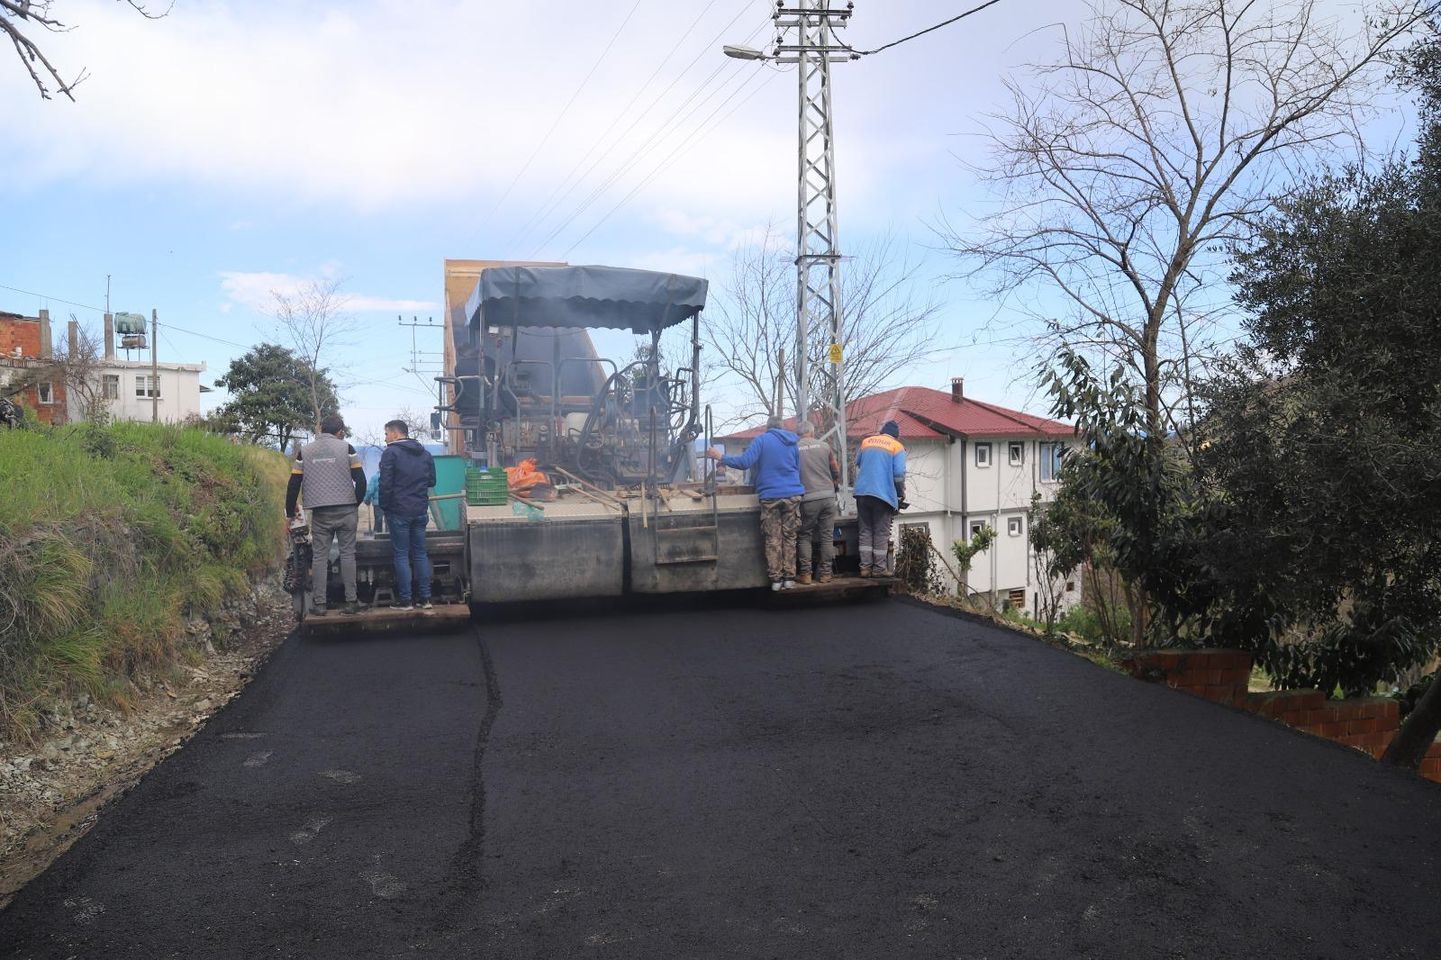 Ordu'da kırsal yol çalışmaları sonuç verdi: Perşembe ilçesine bağlı iki mahalle arasındaki yol asfaltlandı!